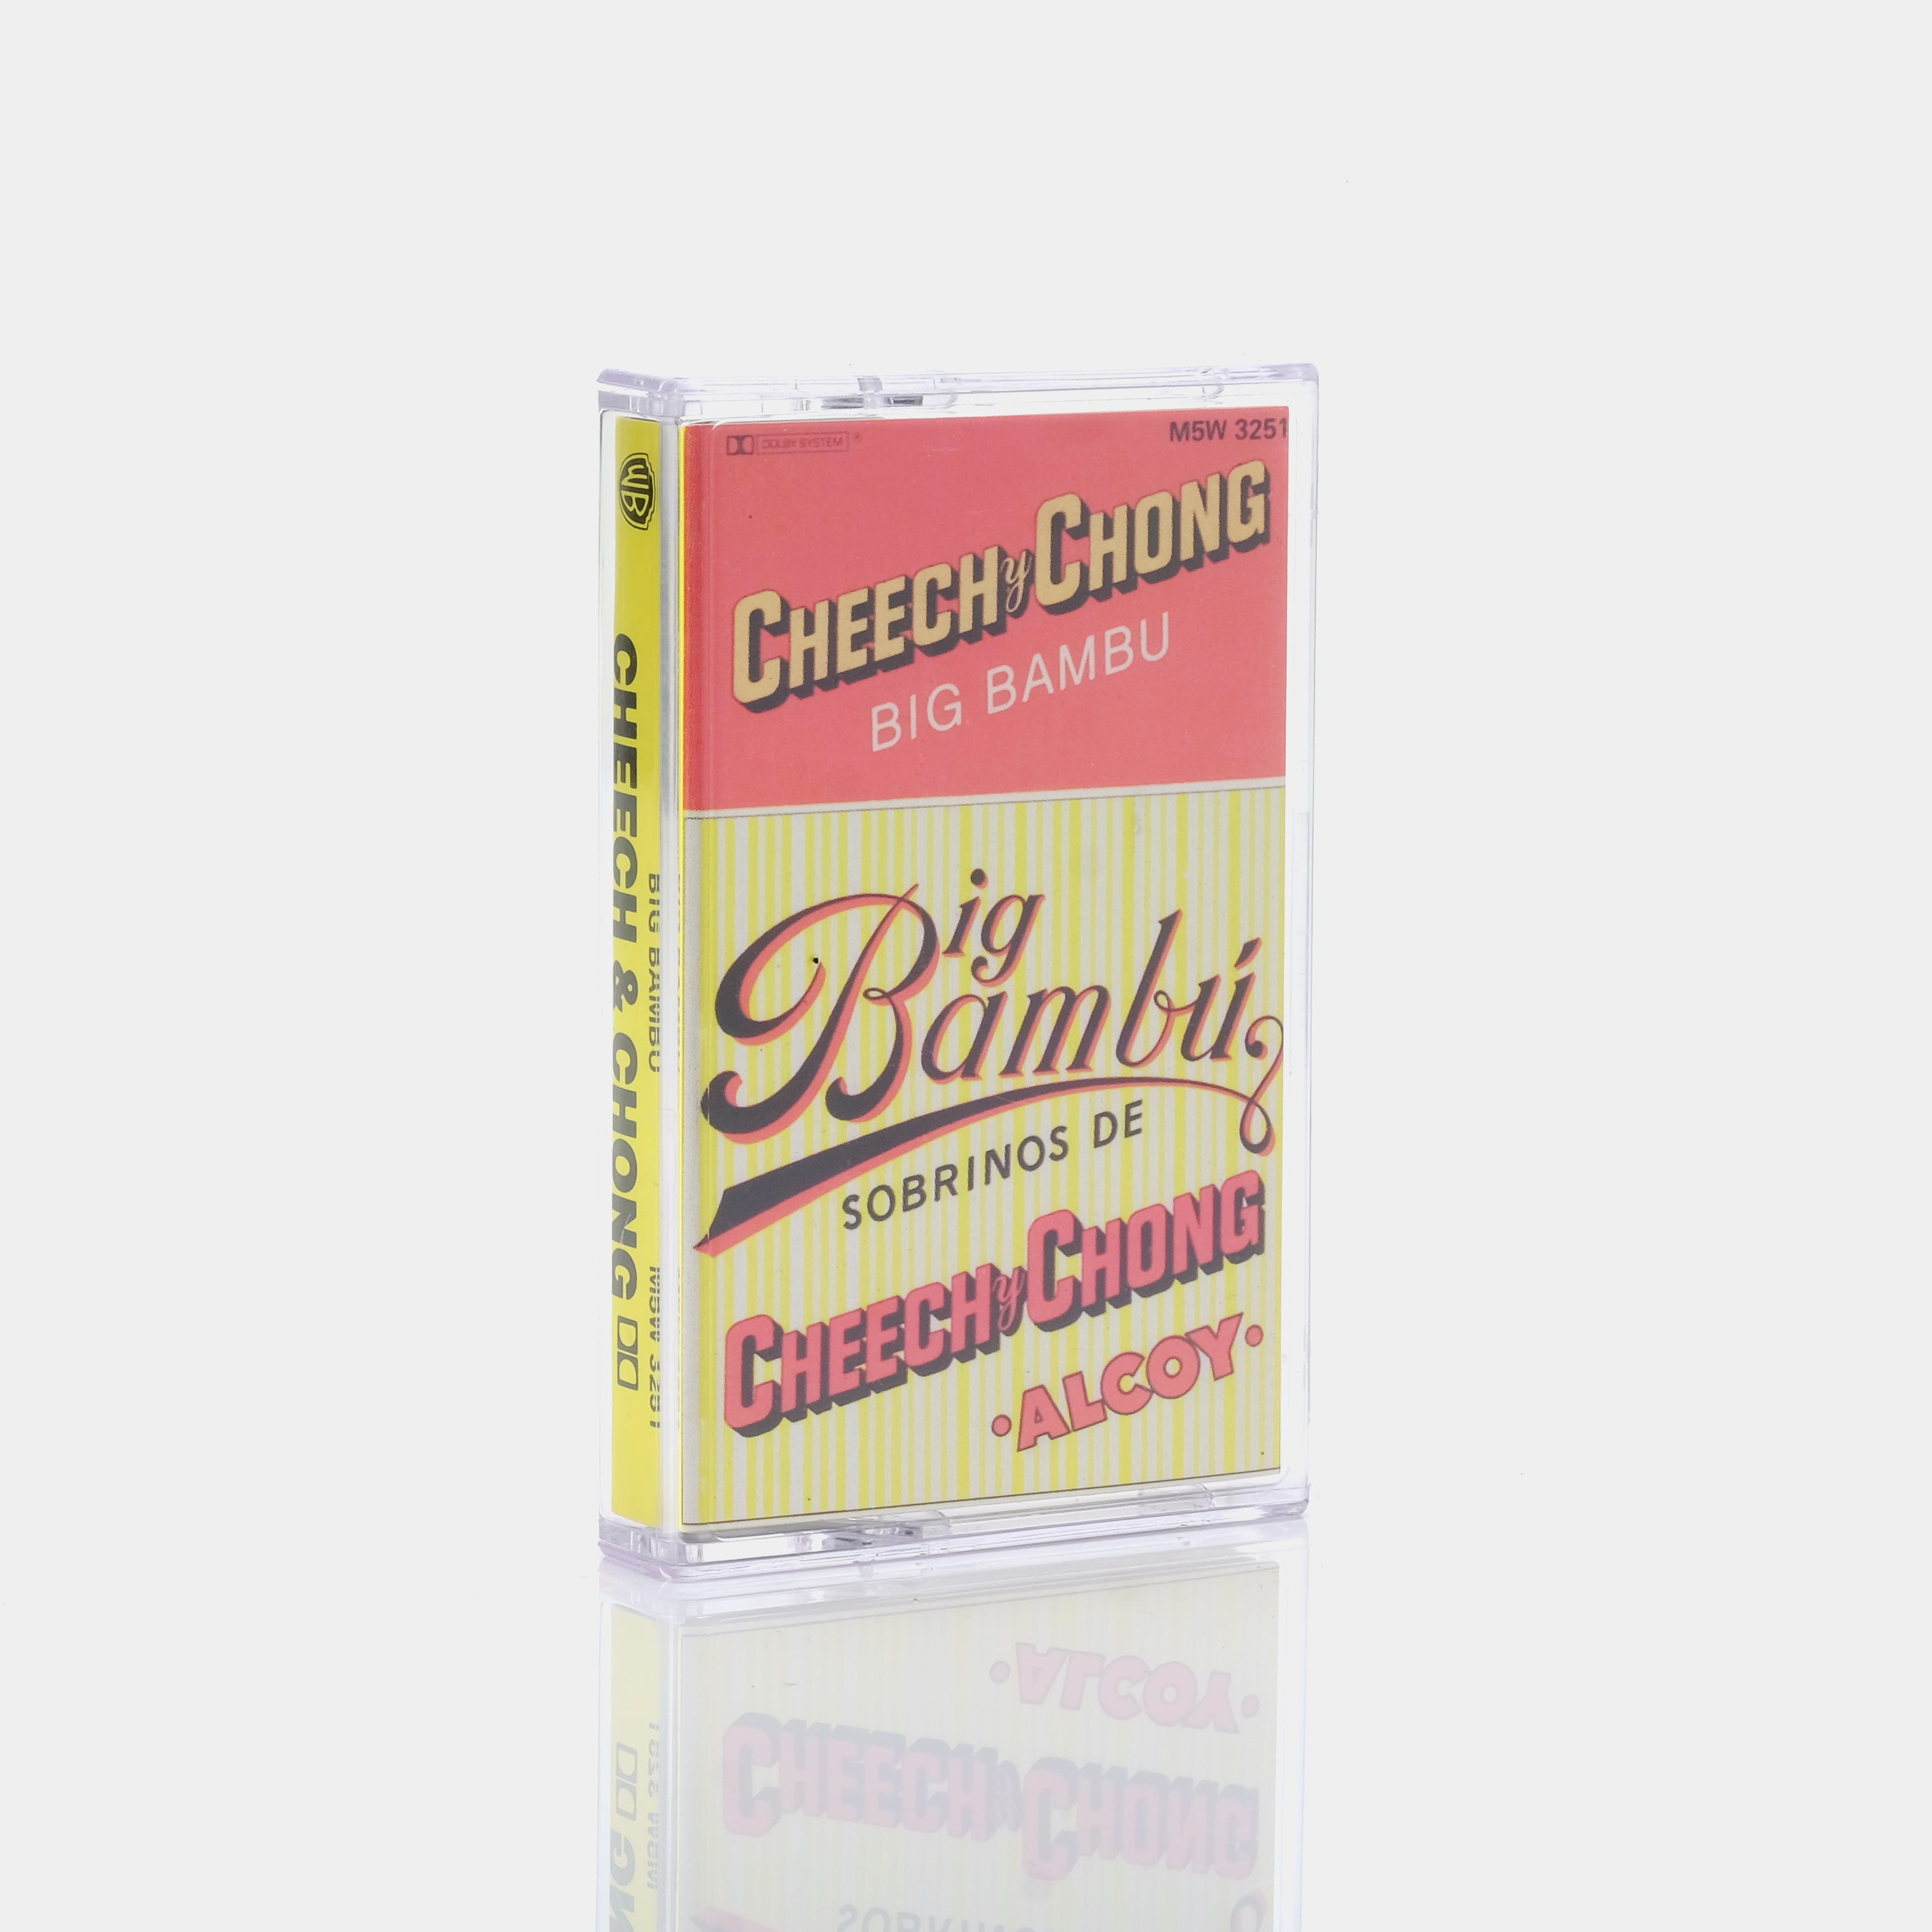 Cheech & Chong - Big Bambú Cassette Tape